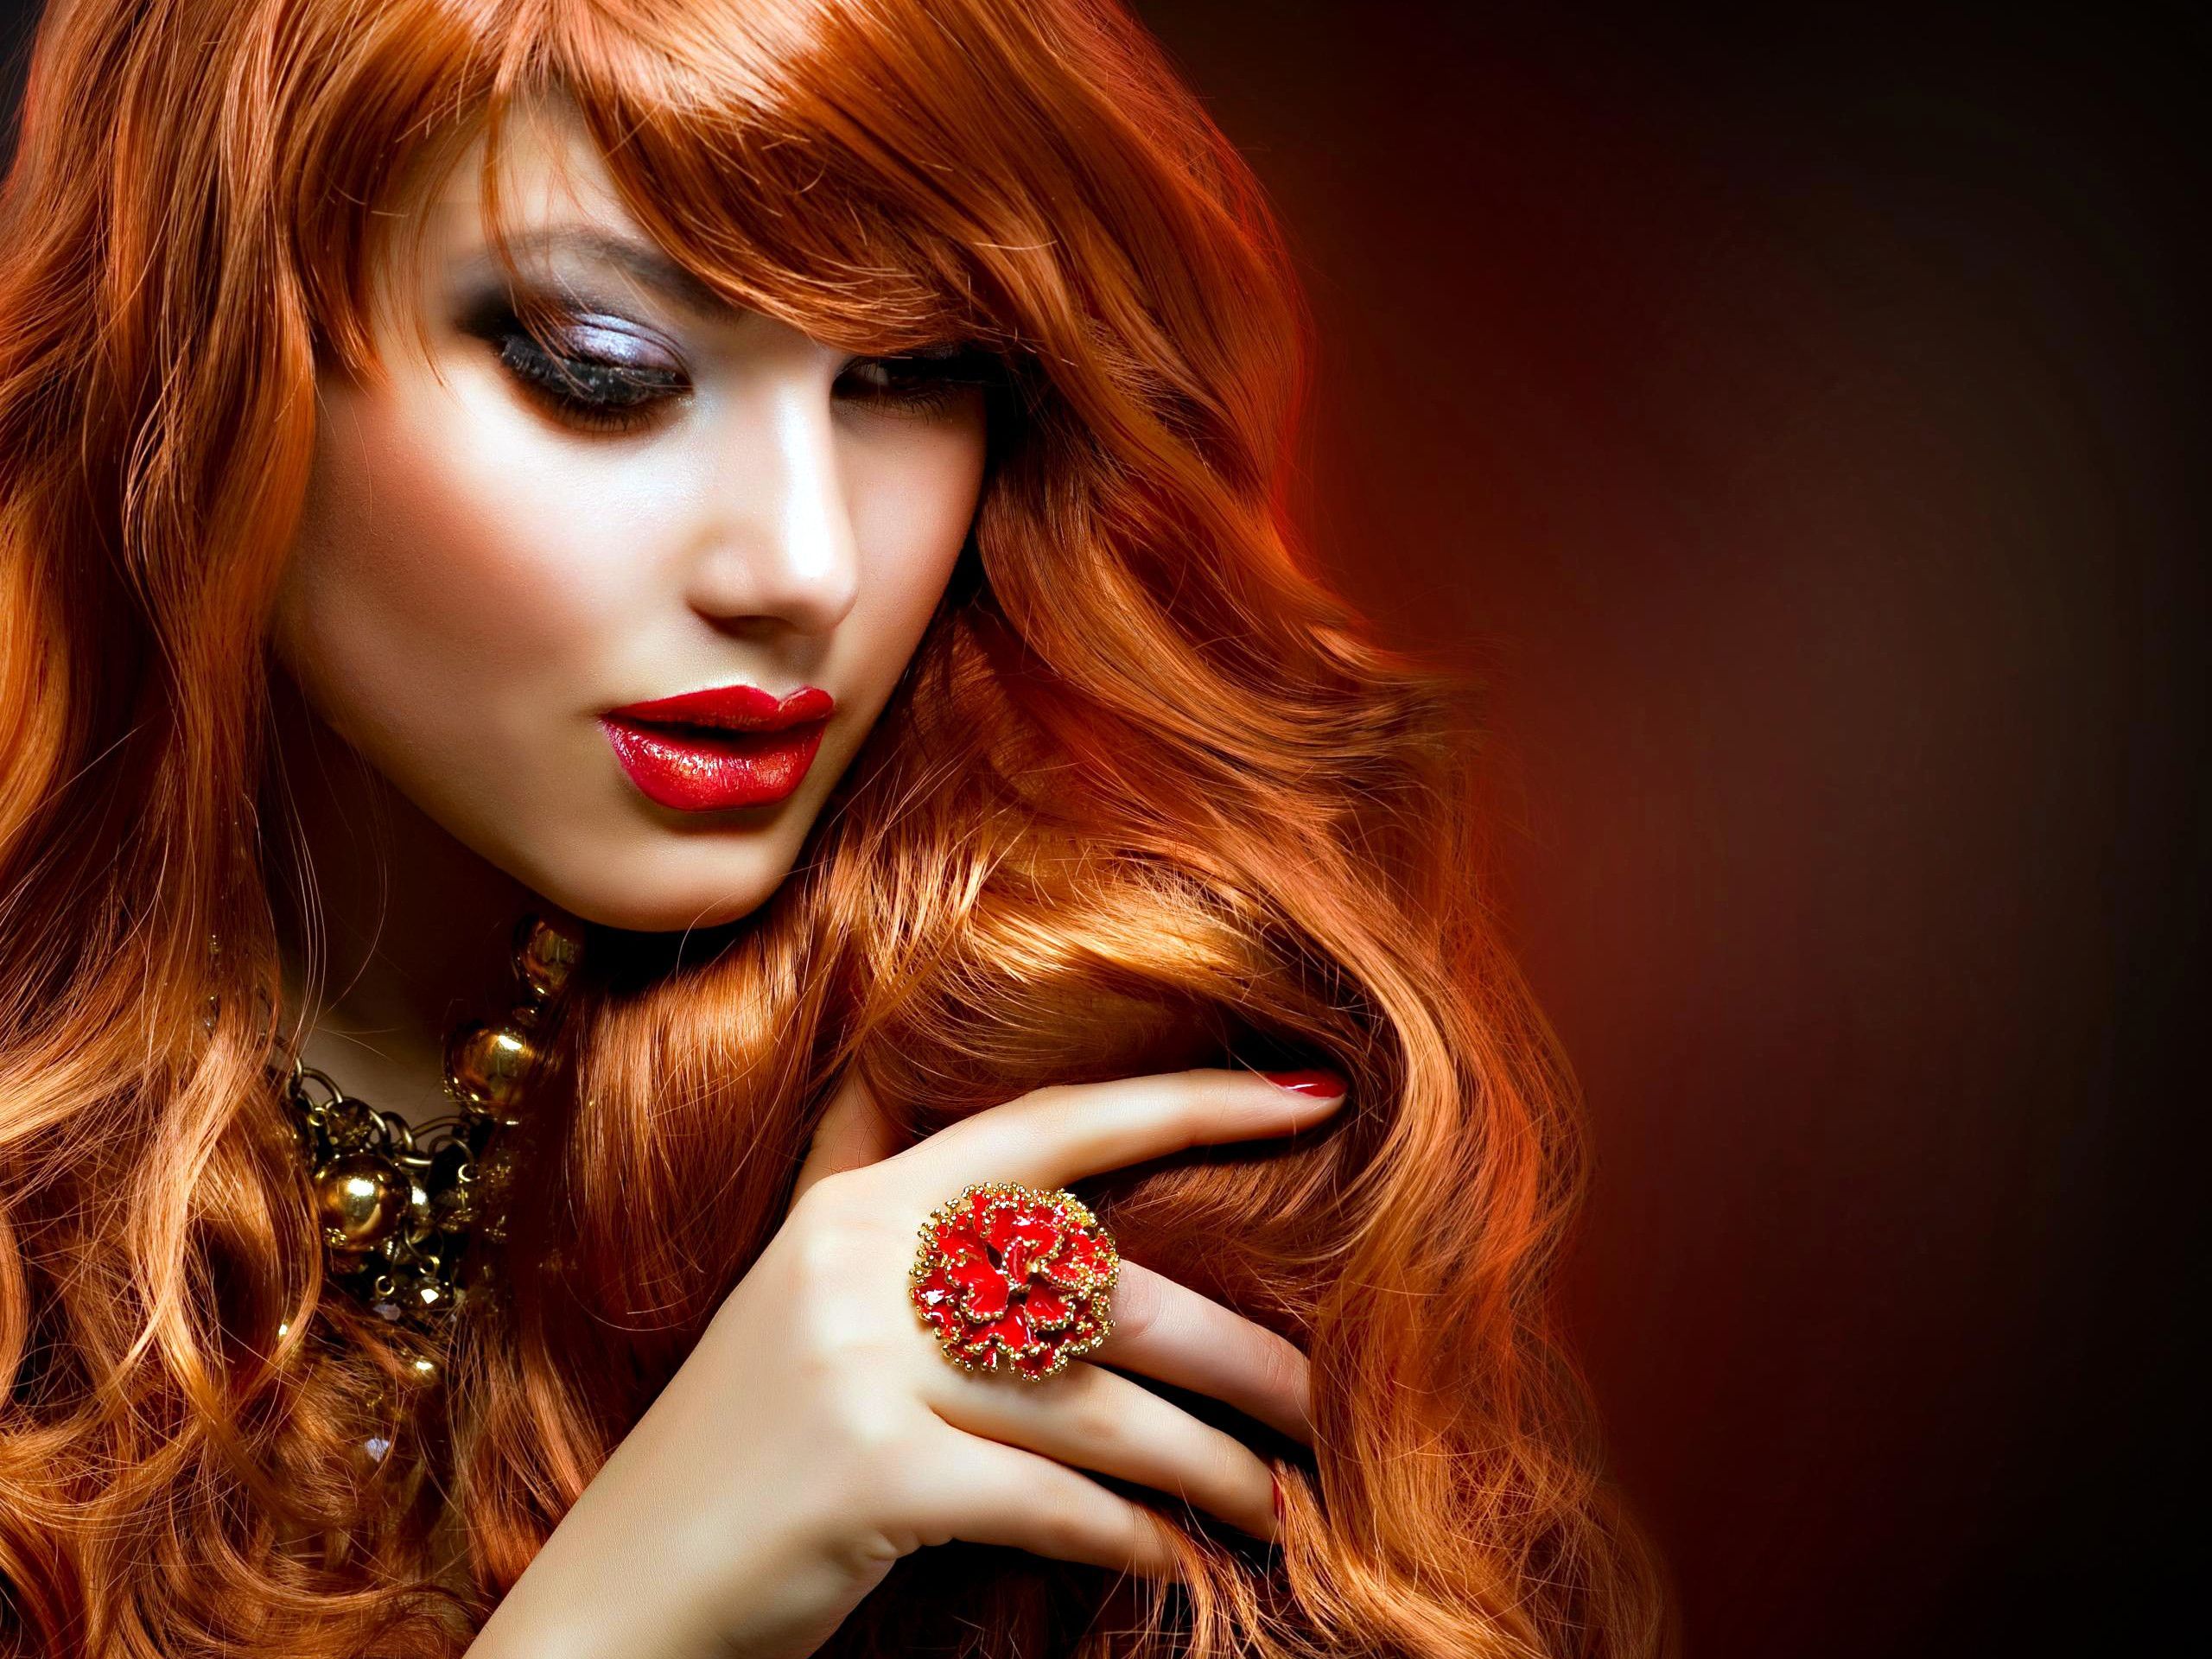 Beauty Salon Wallpaper. Beauty, Portrait girl, Red hair